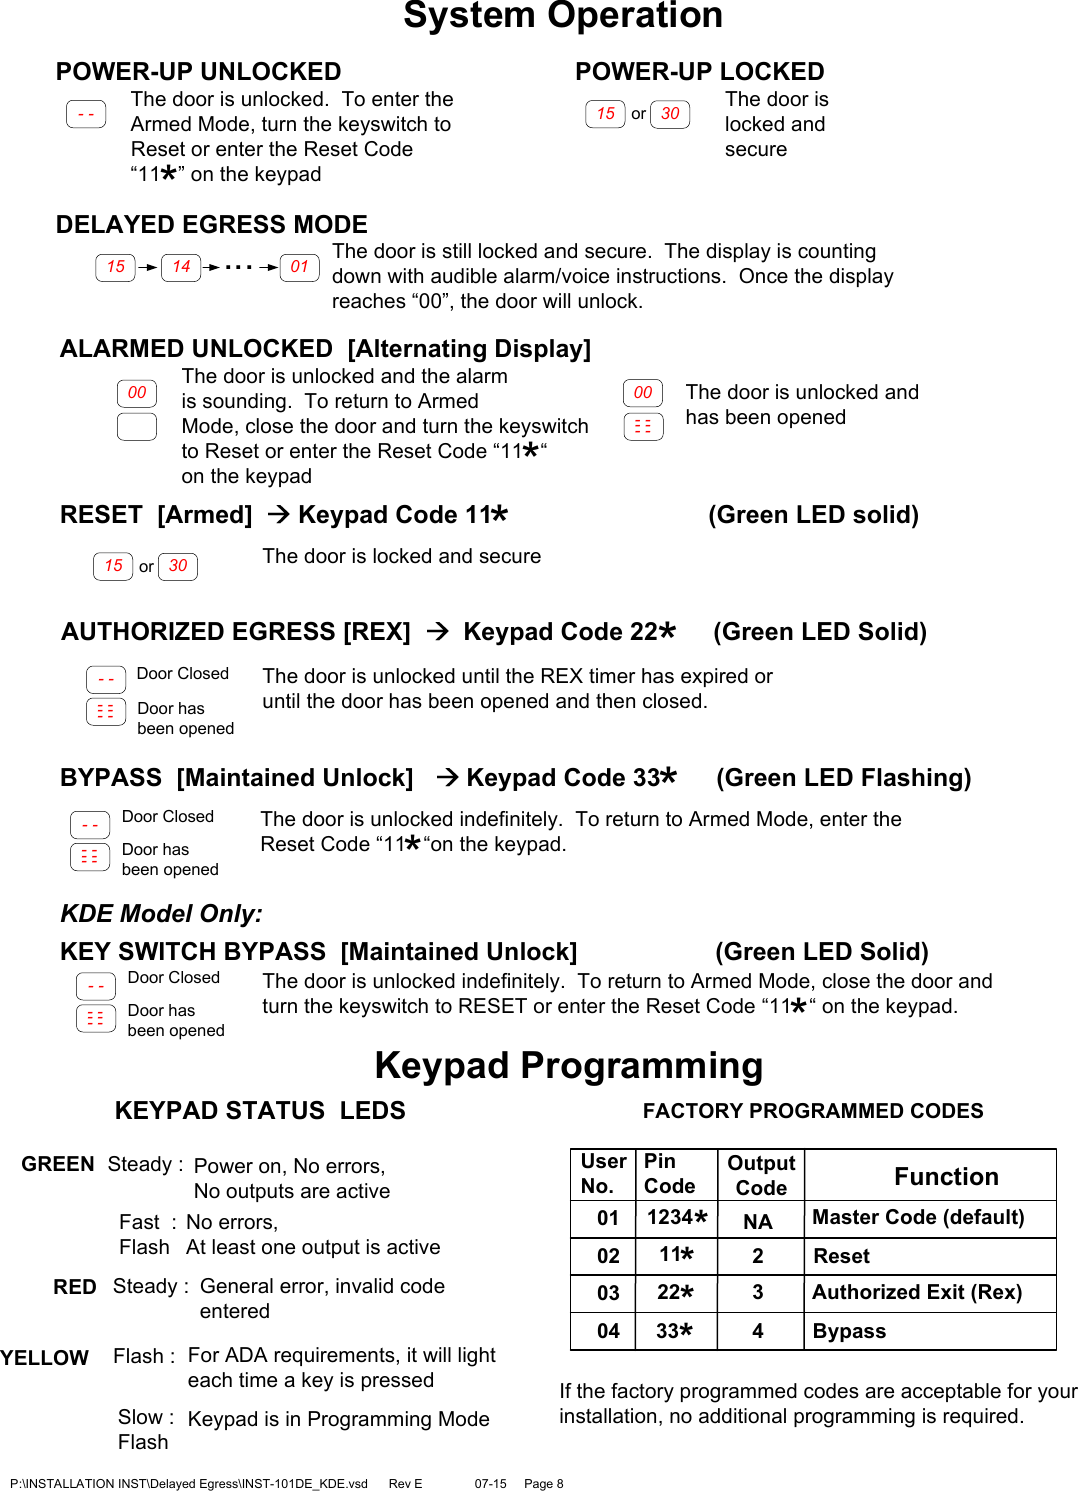 Page 8 of 12 - SDC INST-101-DE_KDE 101-DE KDE Installation Instructions INST-101-DE